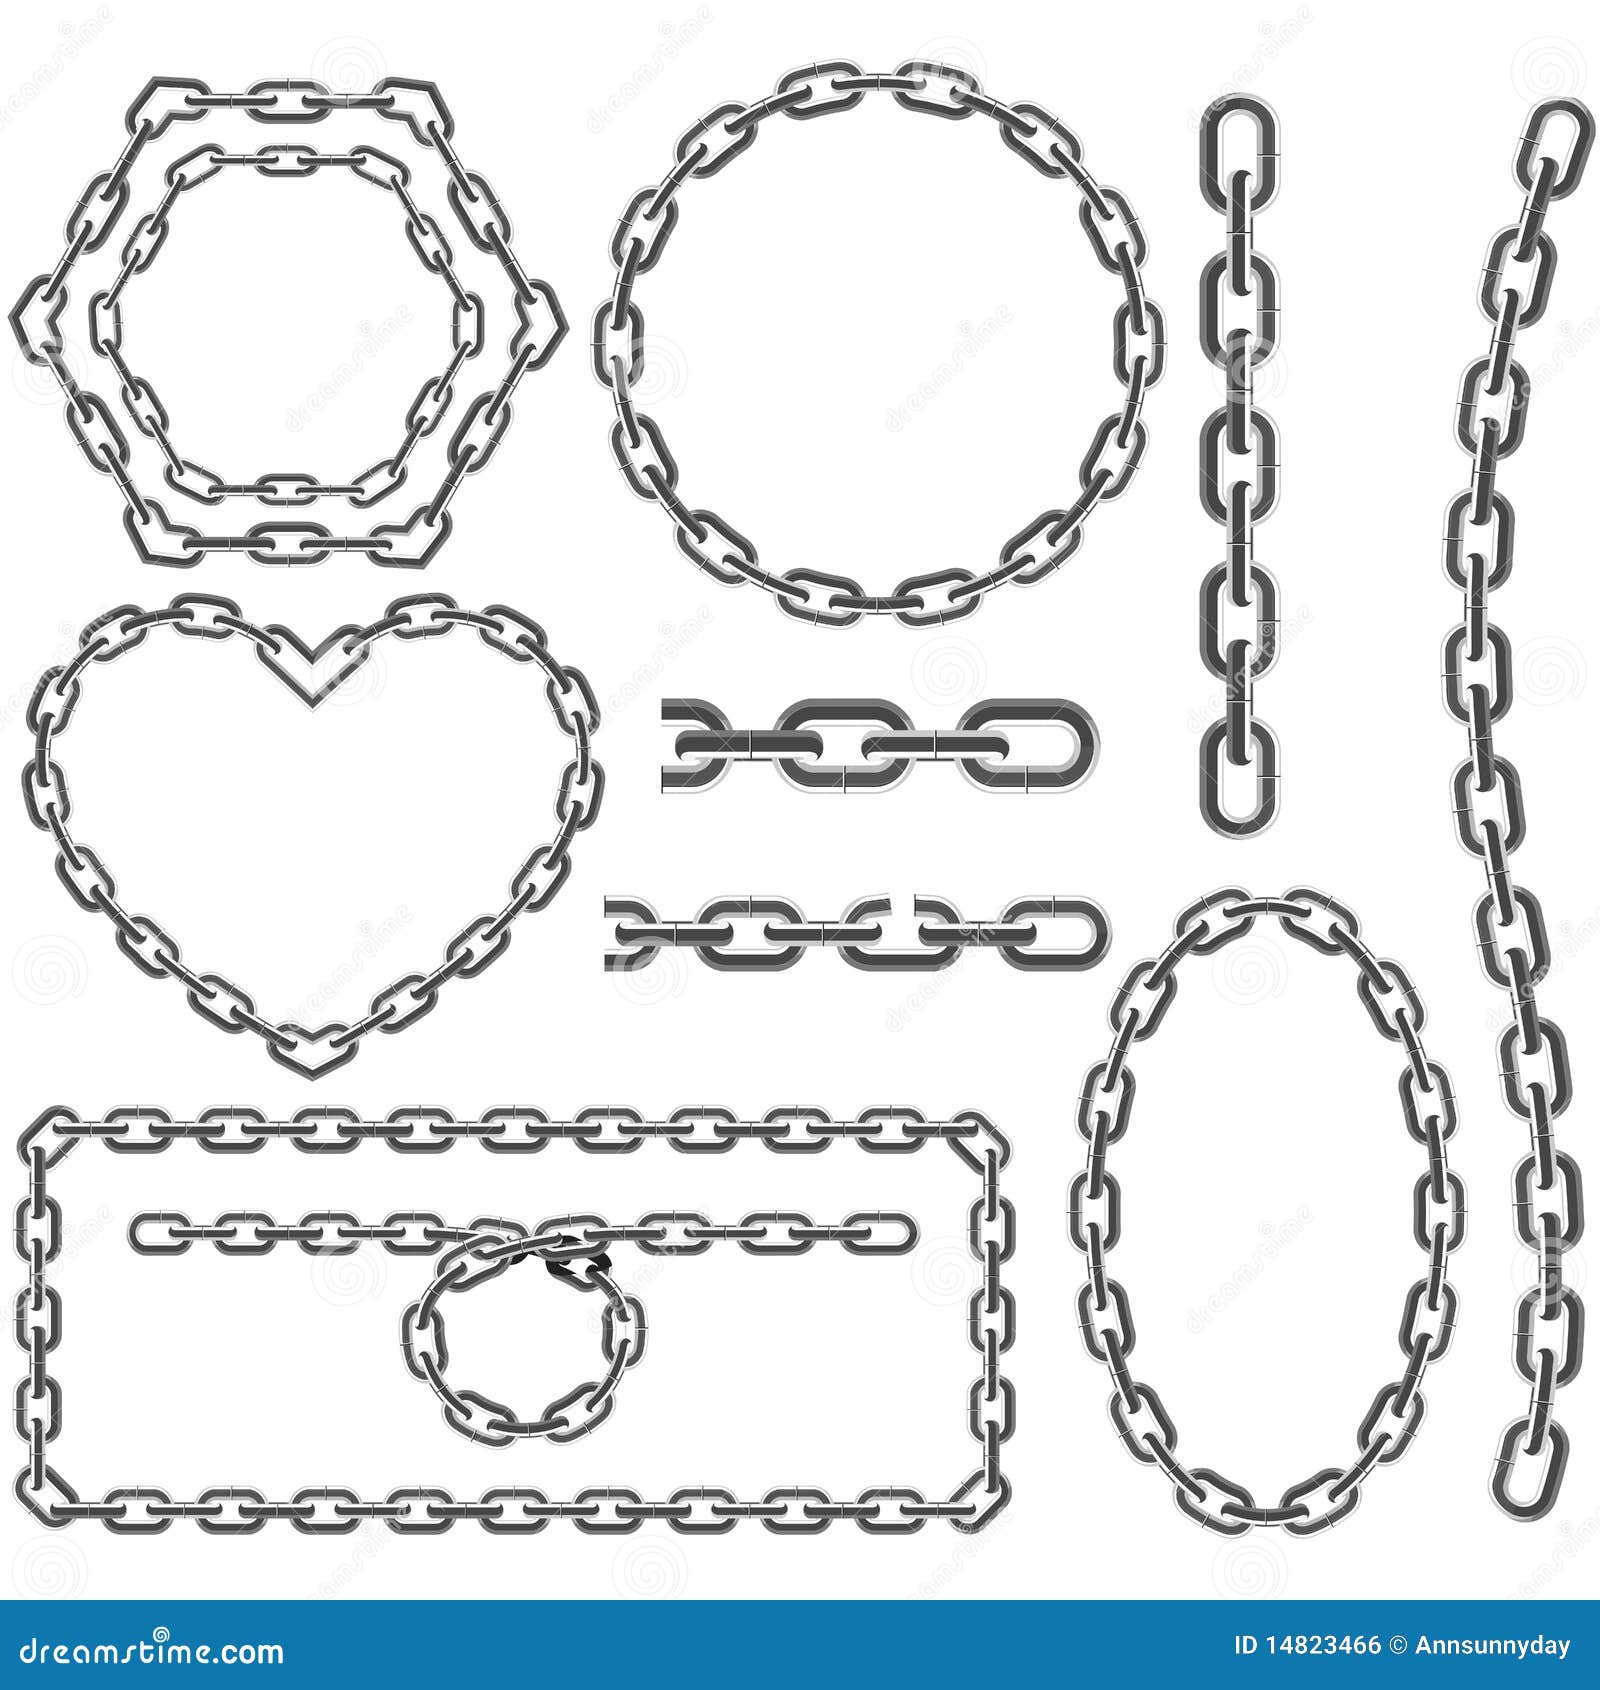 chain frames